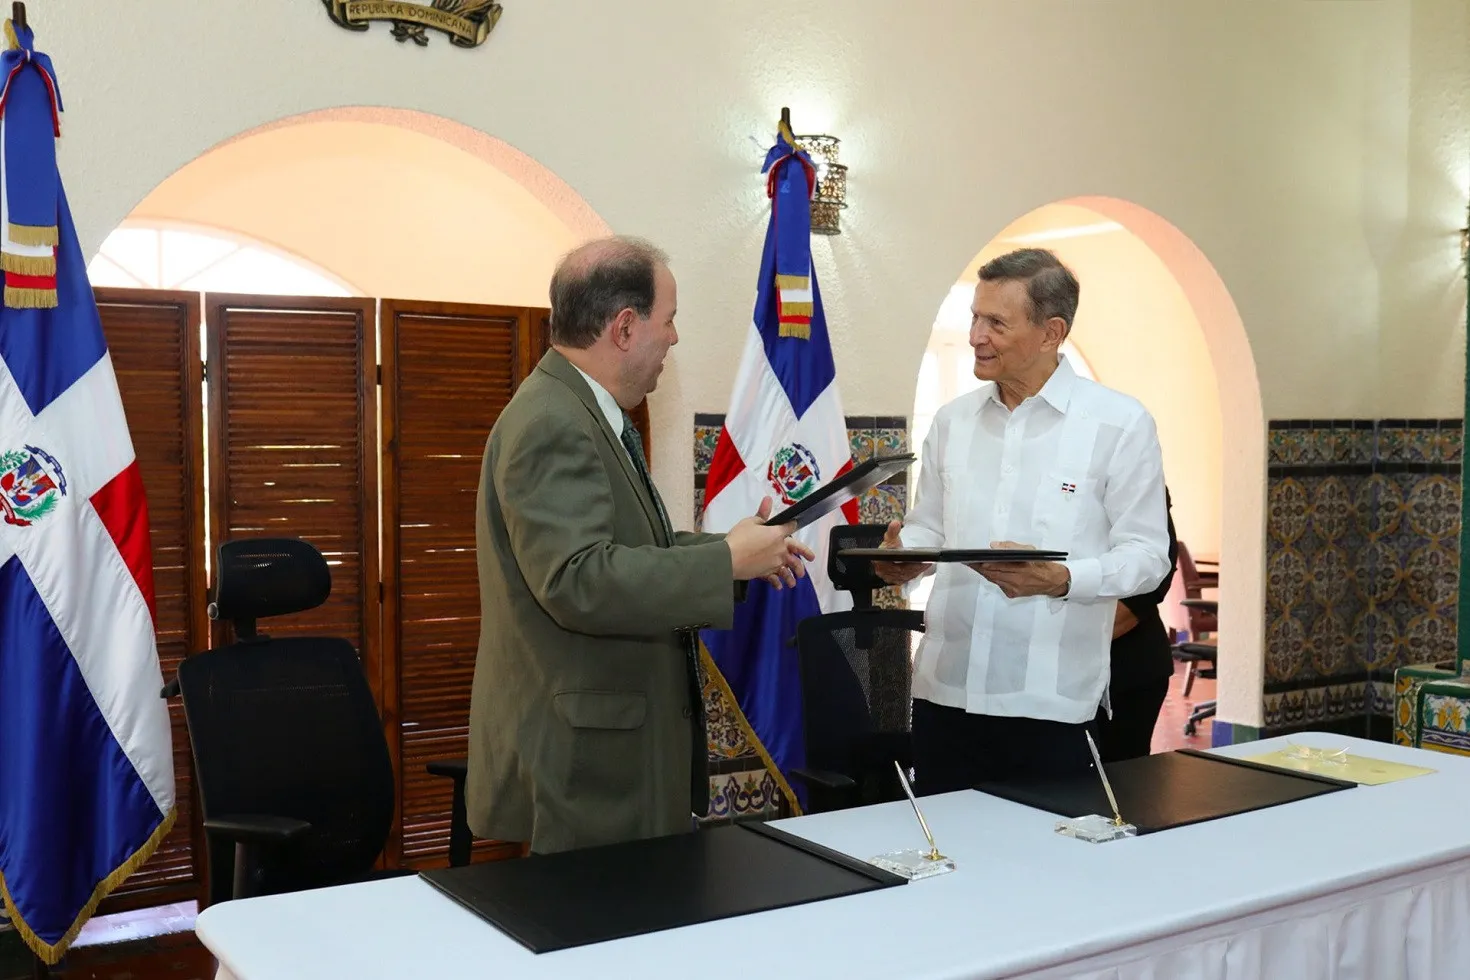 El Gobierno promoverá la cultura dominicana en el exterior tras acuerdo con grupo privado